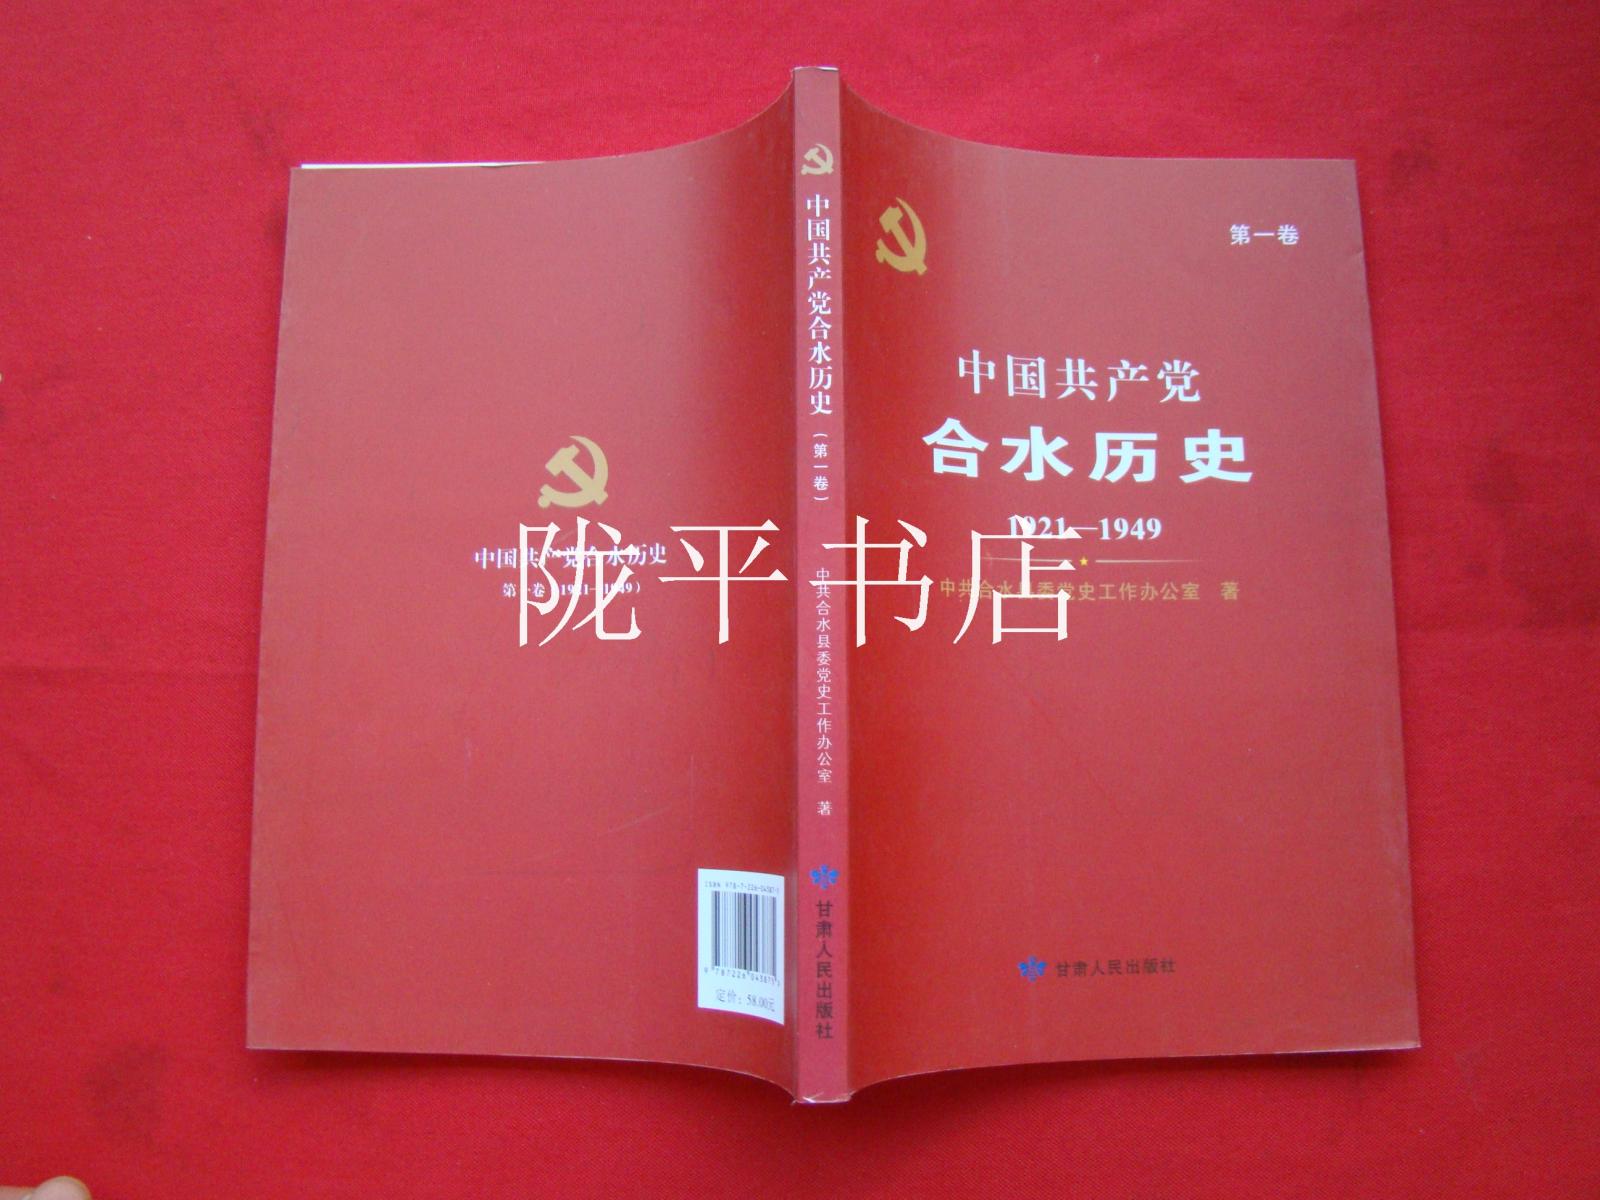 中国共产党合水历史1921――1949第一卷